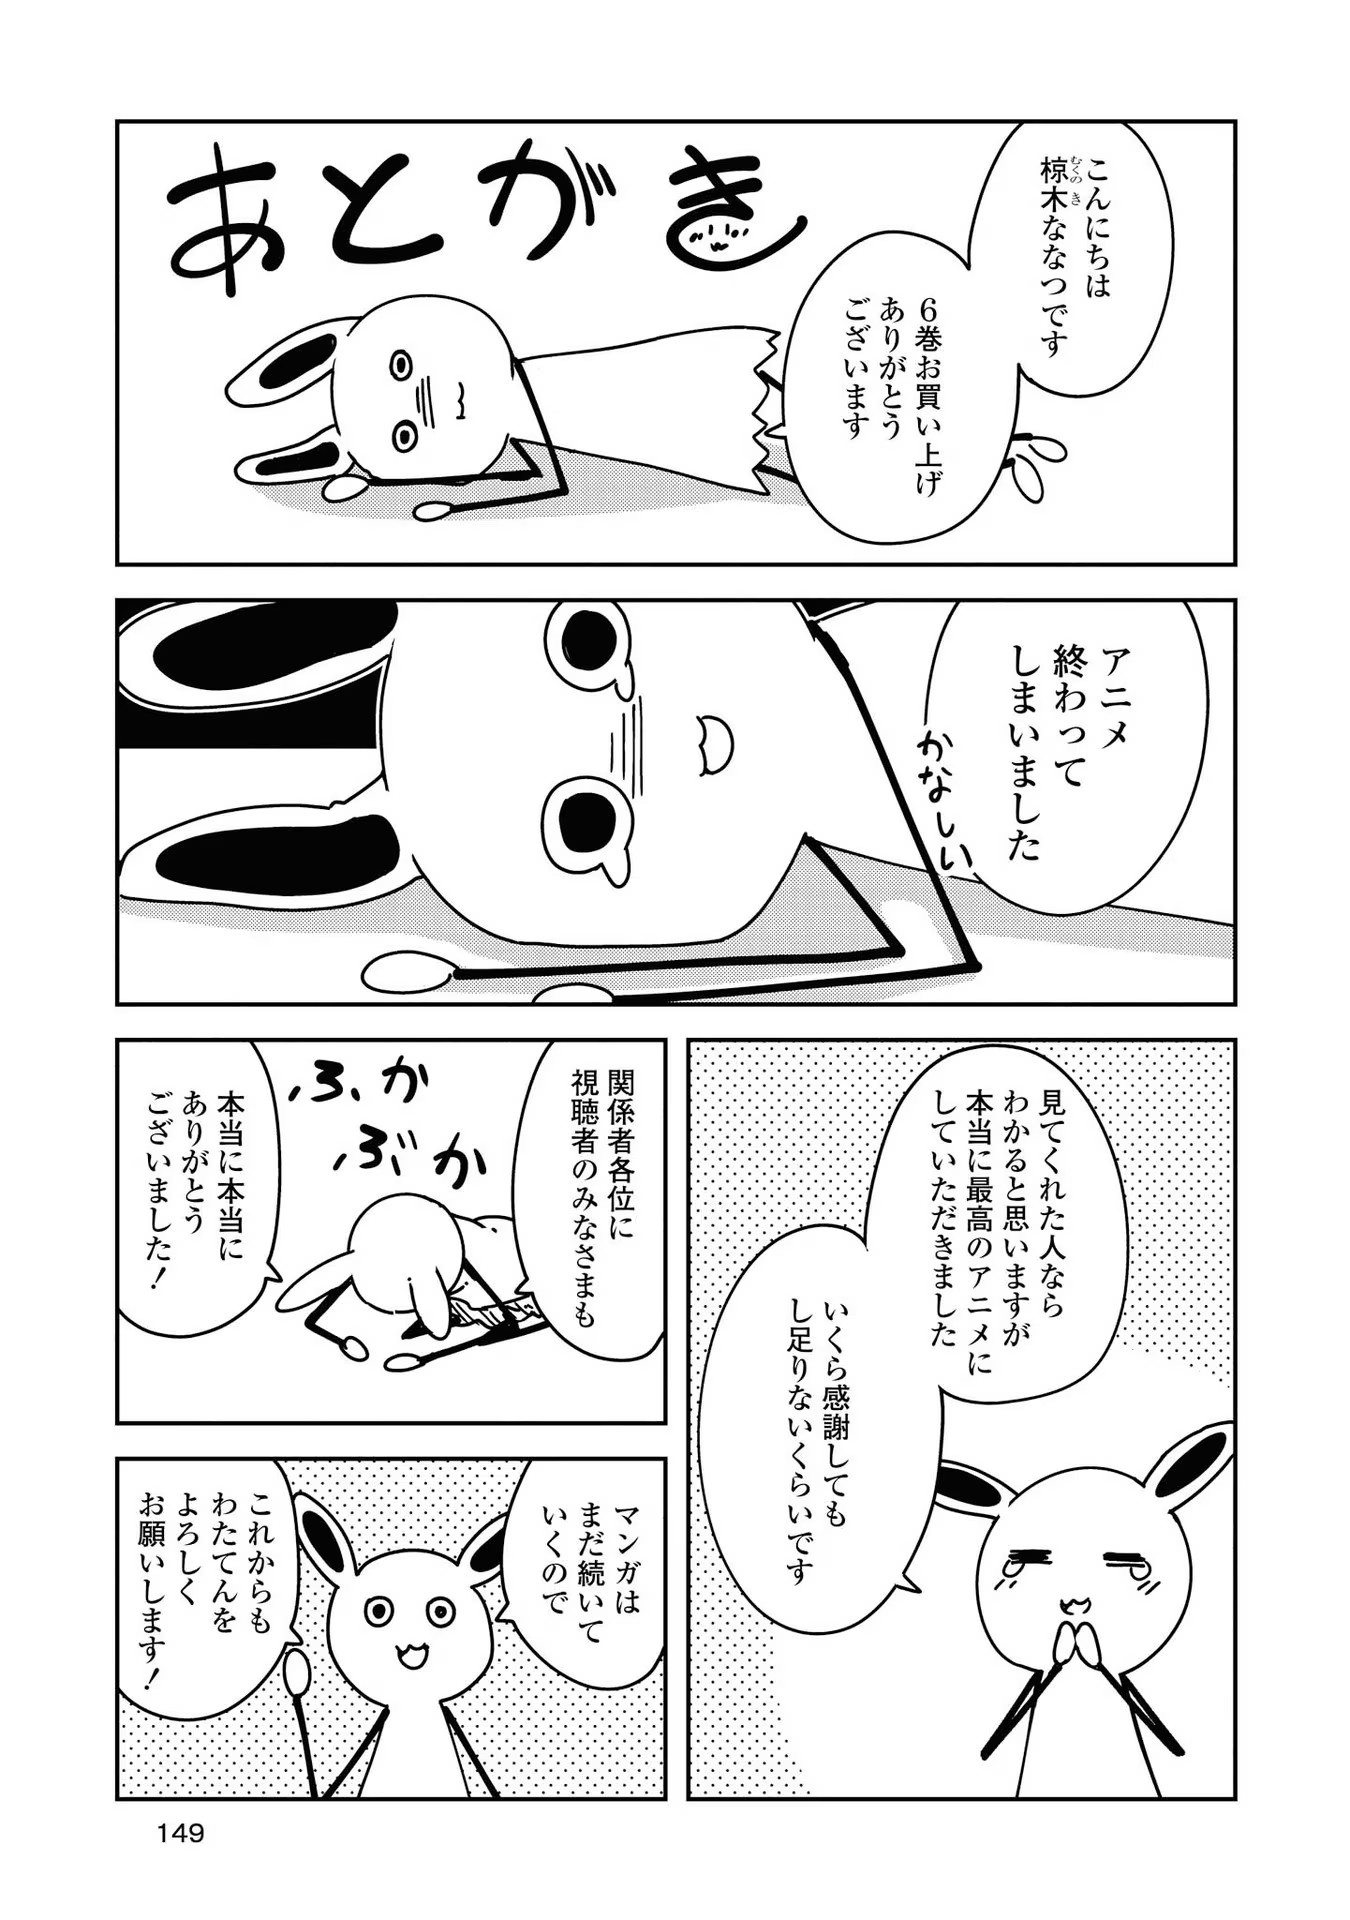 Watashi ni Tenshi ga Maiorita! - Chapter 51.5 - Page 4